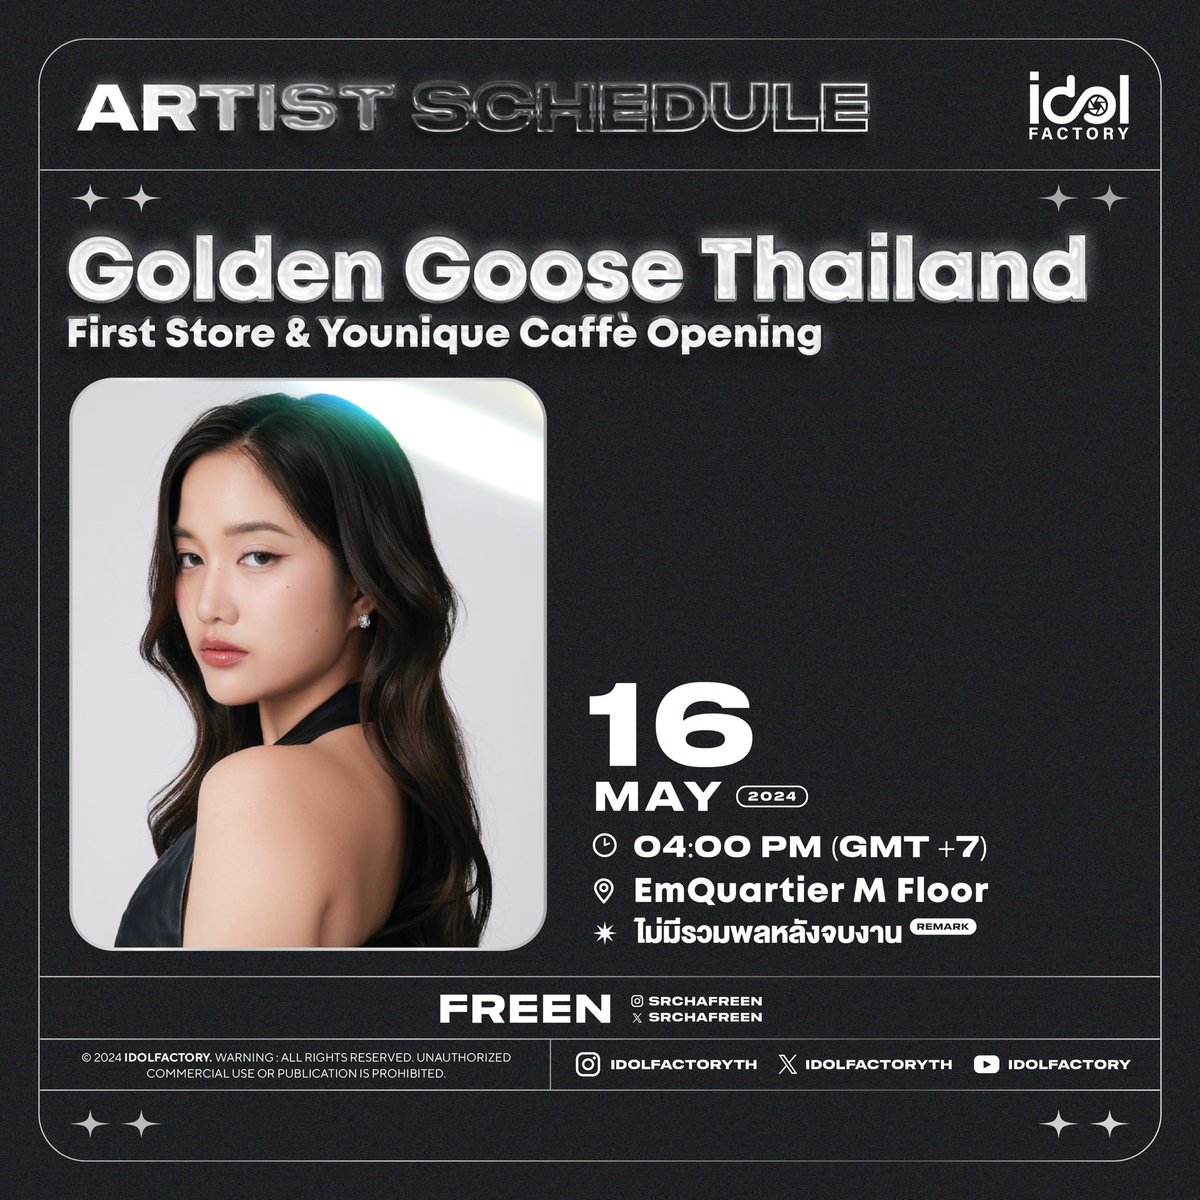 มาพบกับ ฟรีน ได้ที่งาน Golden Goose Thailand First Store & Younique Caffè Opening

🗓️ 16 พฤษภาคม 2567
⏰ 4.00 PM 
📍EmQuartier M Floor

📈 OPENING STORE WITH SAROCHA
#️⃣#.GoldenGooseFREEN
📌Start Trending 3.30 PM

✨แฟนๆสามารถให้กำลังใจบริเวณรอบๆงานได้ 
❌ไม่มีรวมพลหลังจบงาน